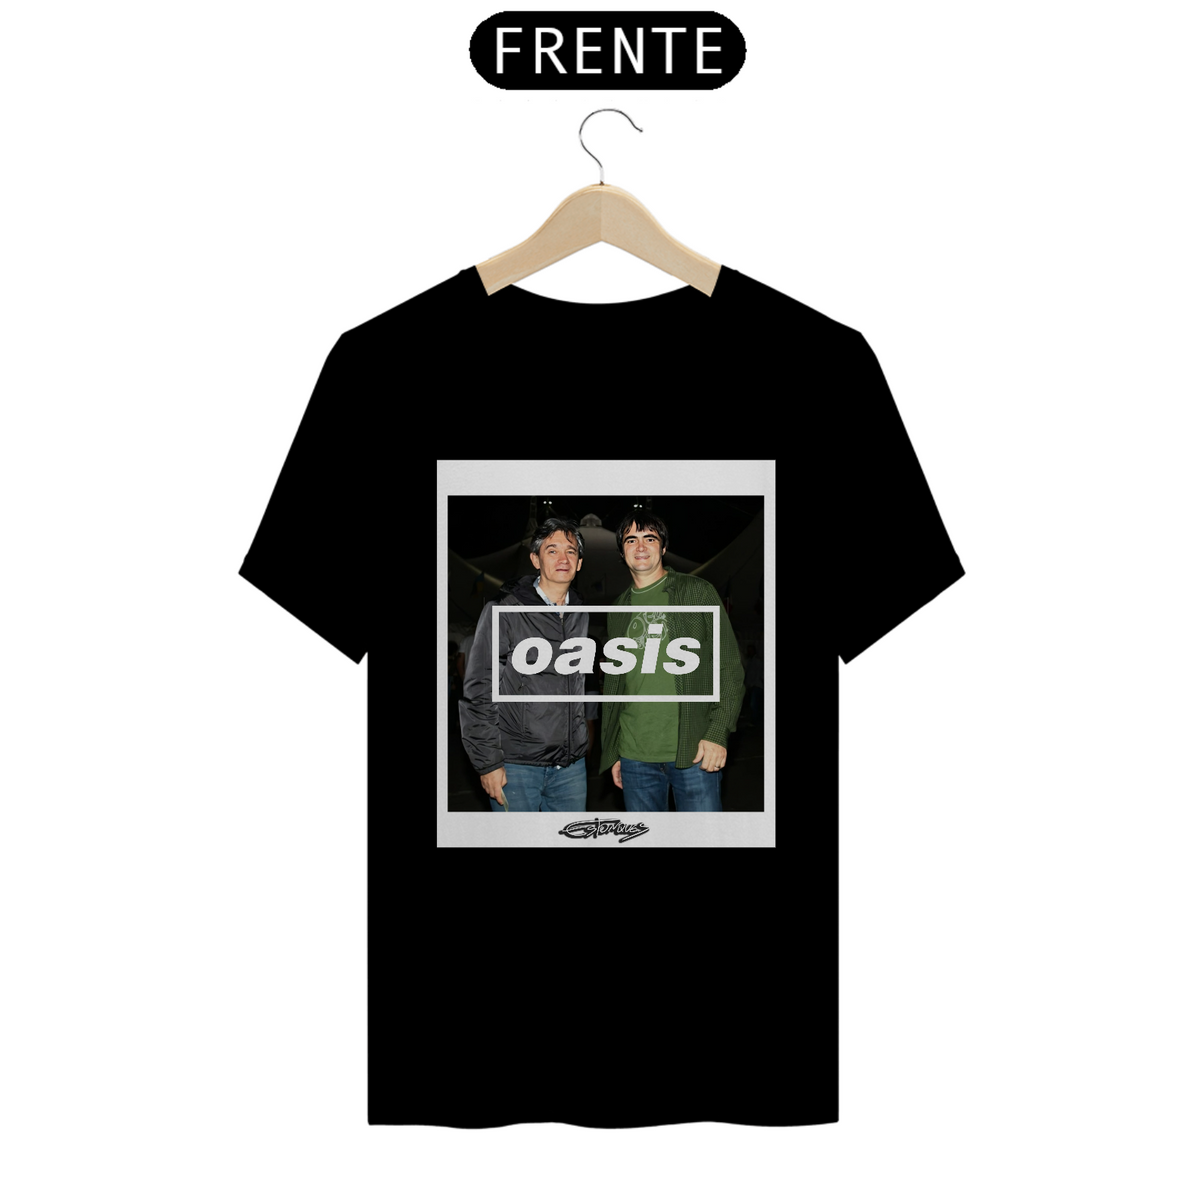 Nome do produto: Camiseta Oasis